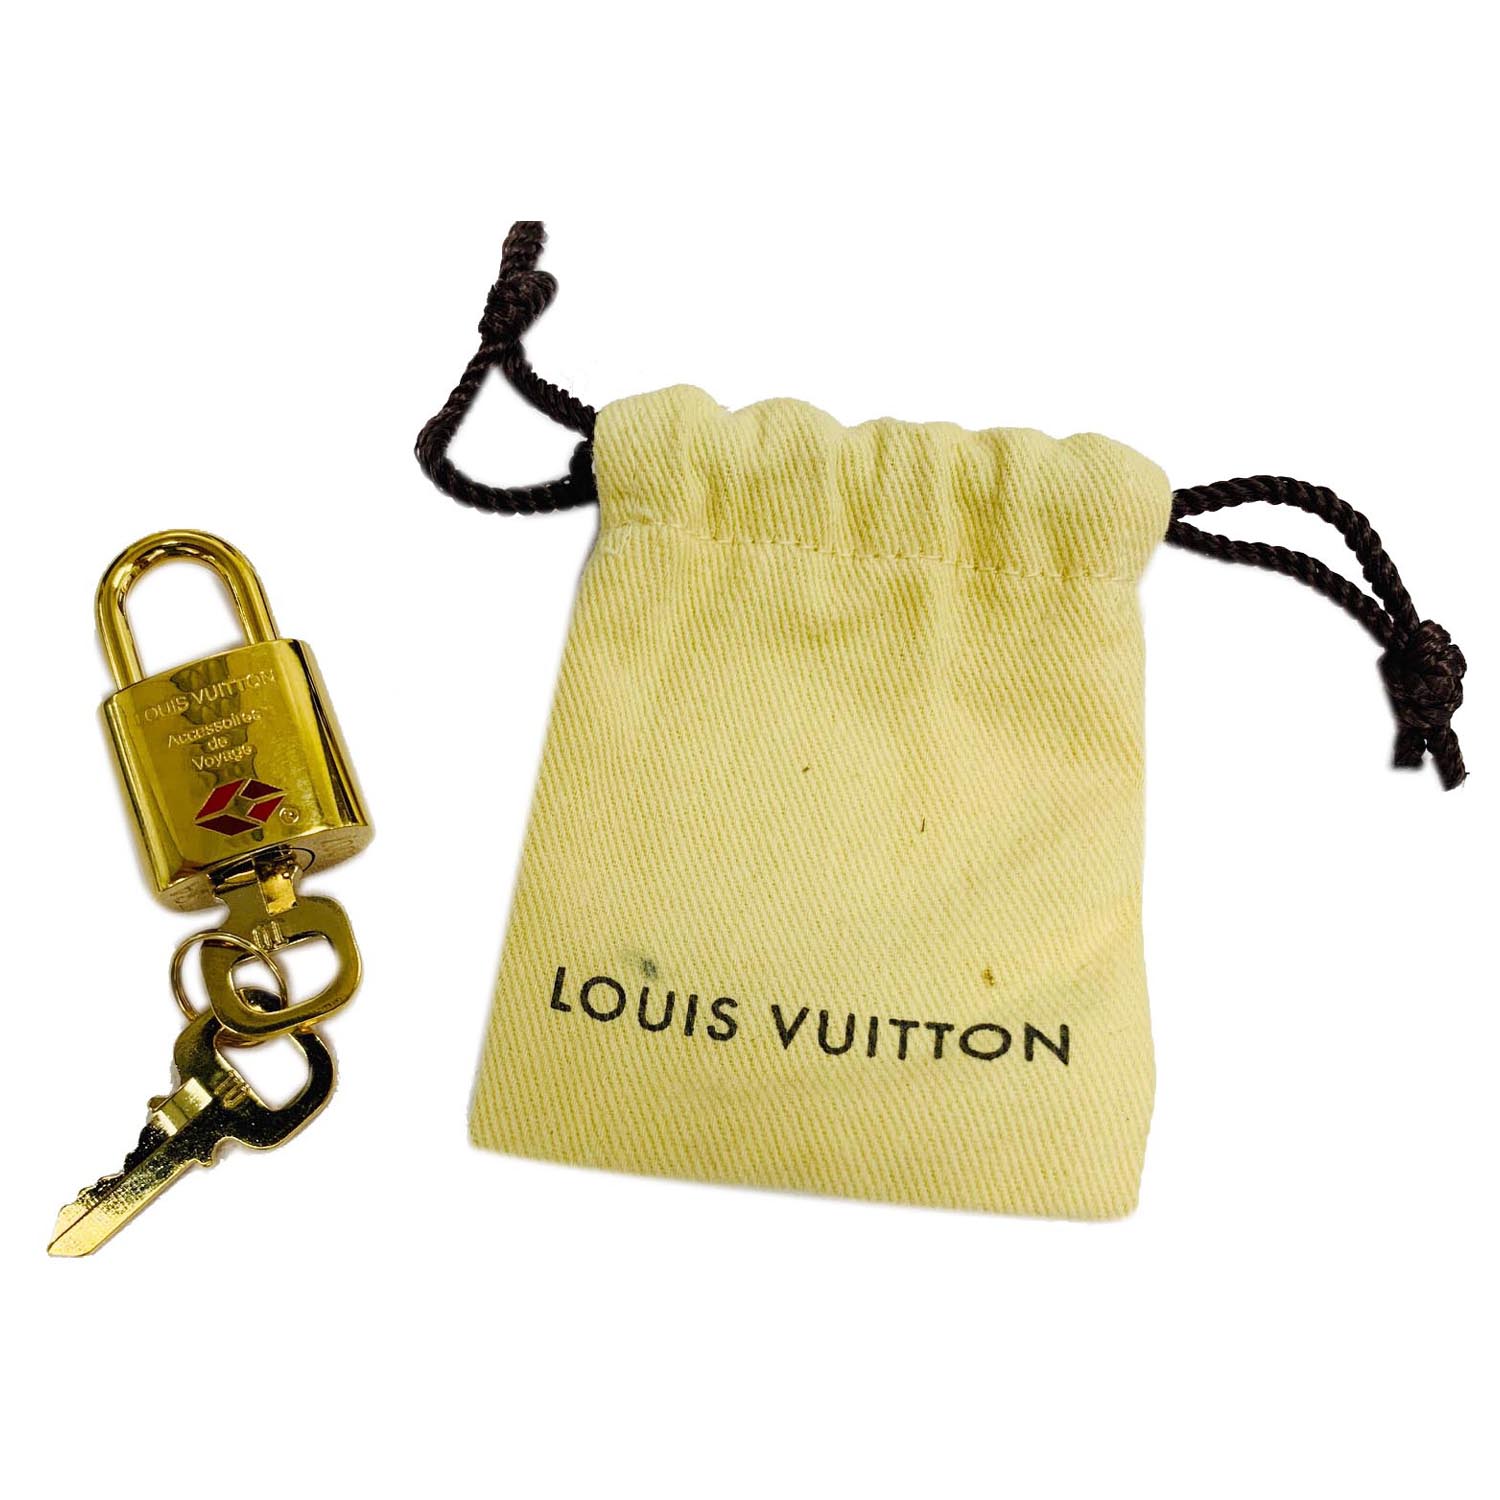 Original Louis Vuitton Safety Keychain